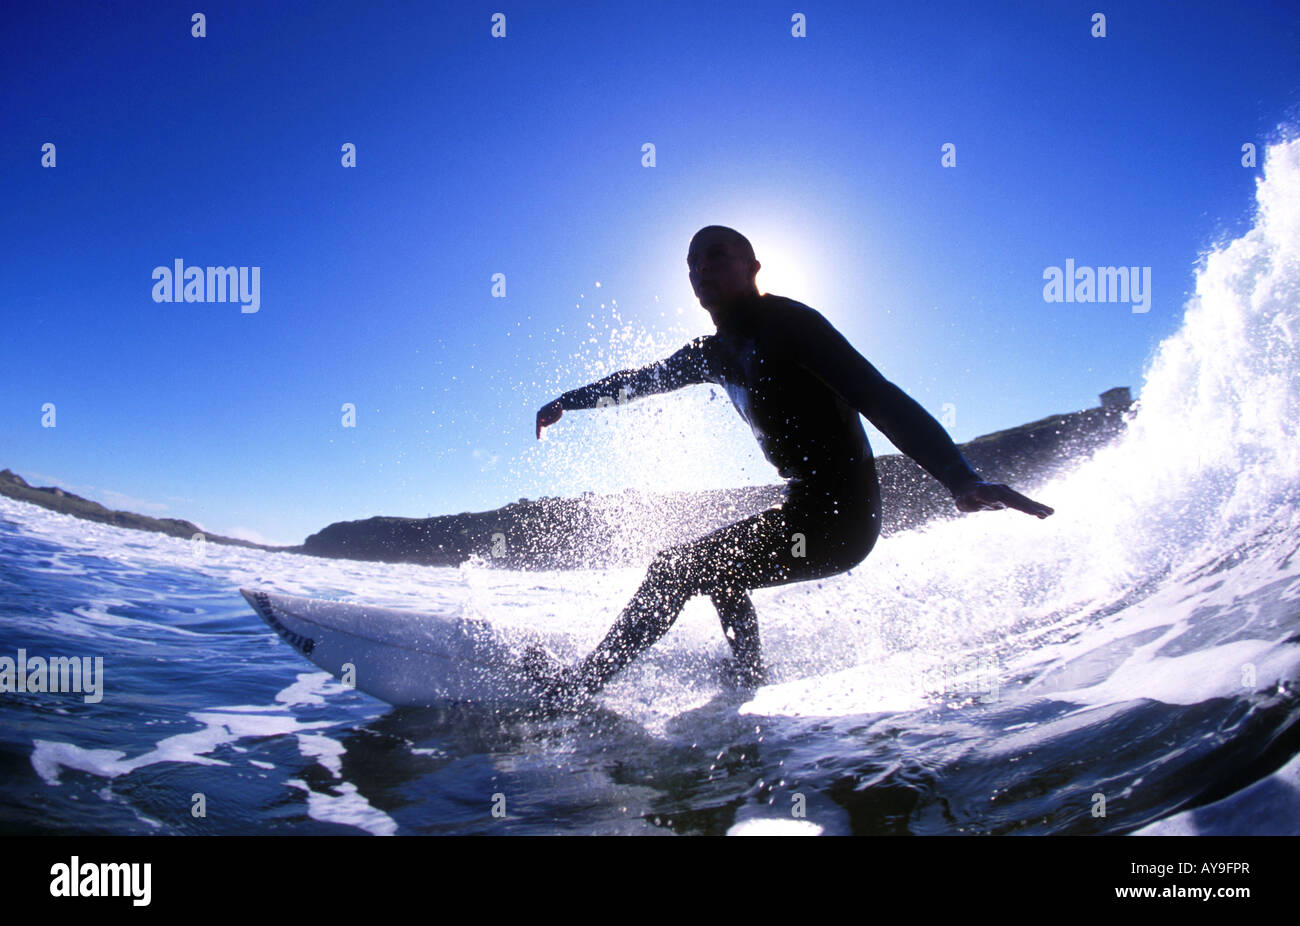 Richard Mullins surfing action, Ireland Stock Photo